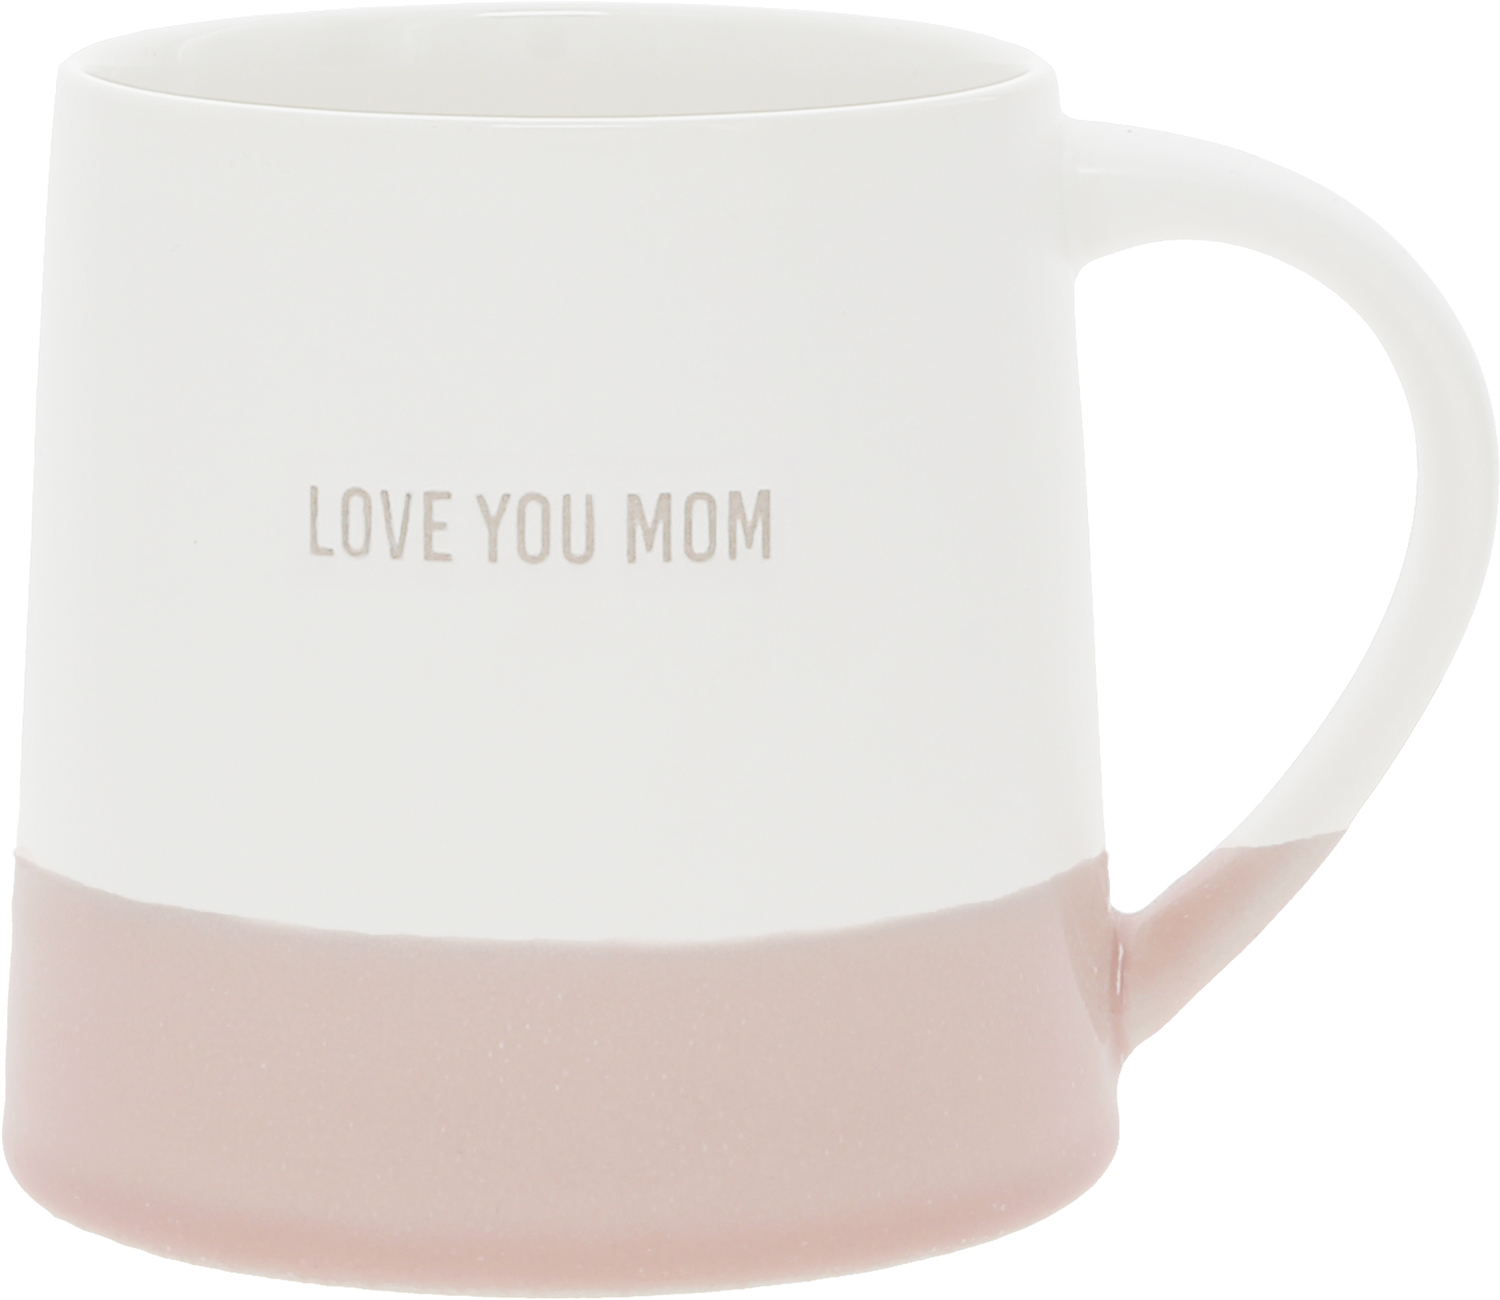 Love You Mom by Love You - Love You Mom - 17 oz Mug